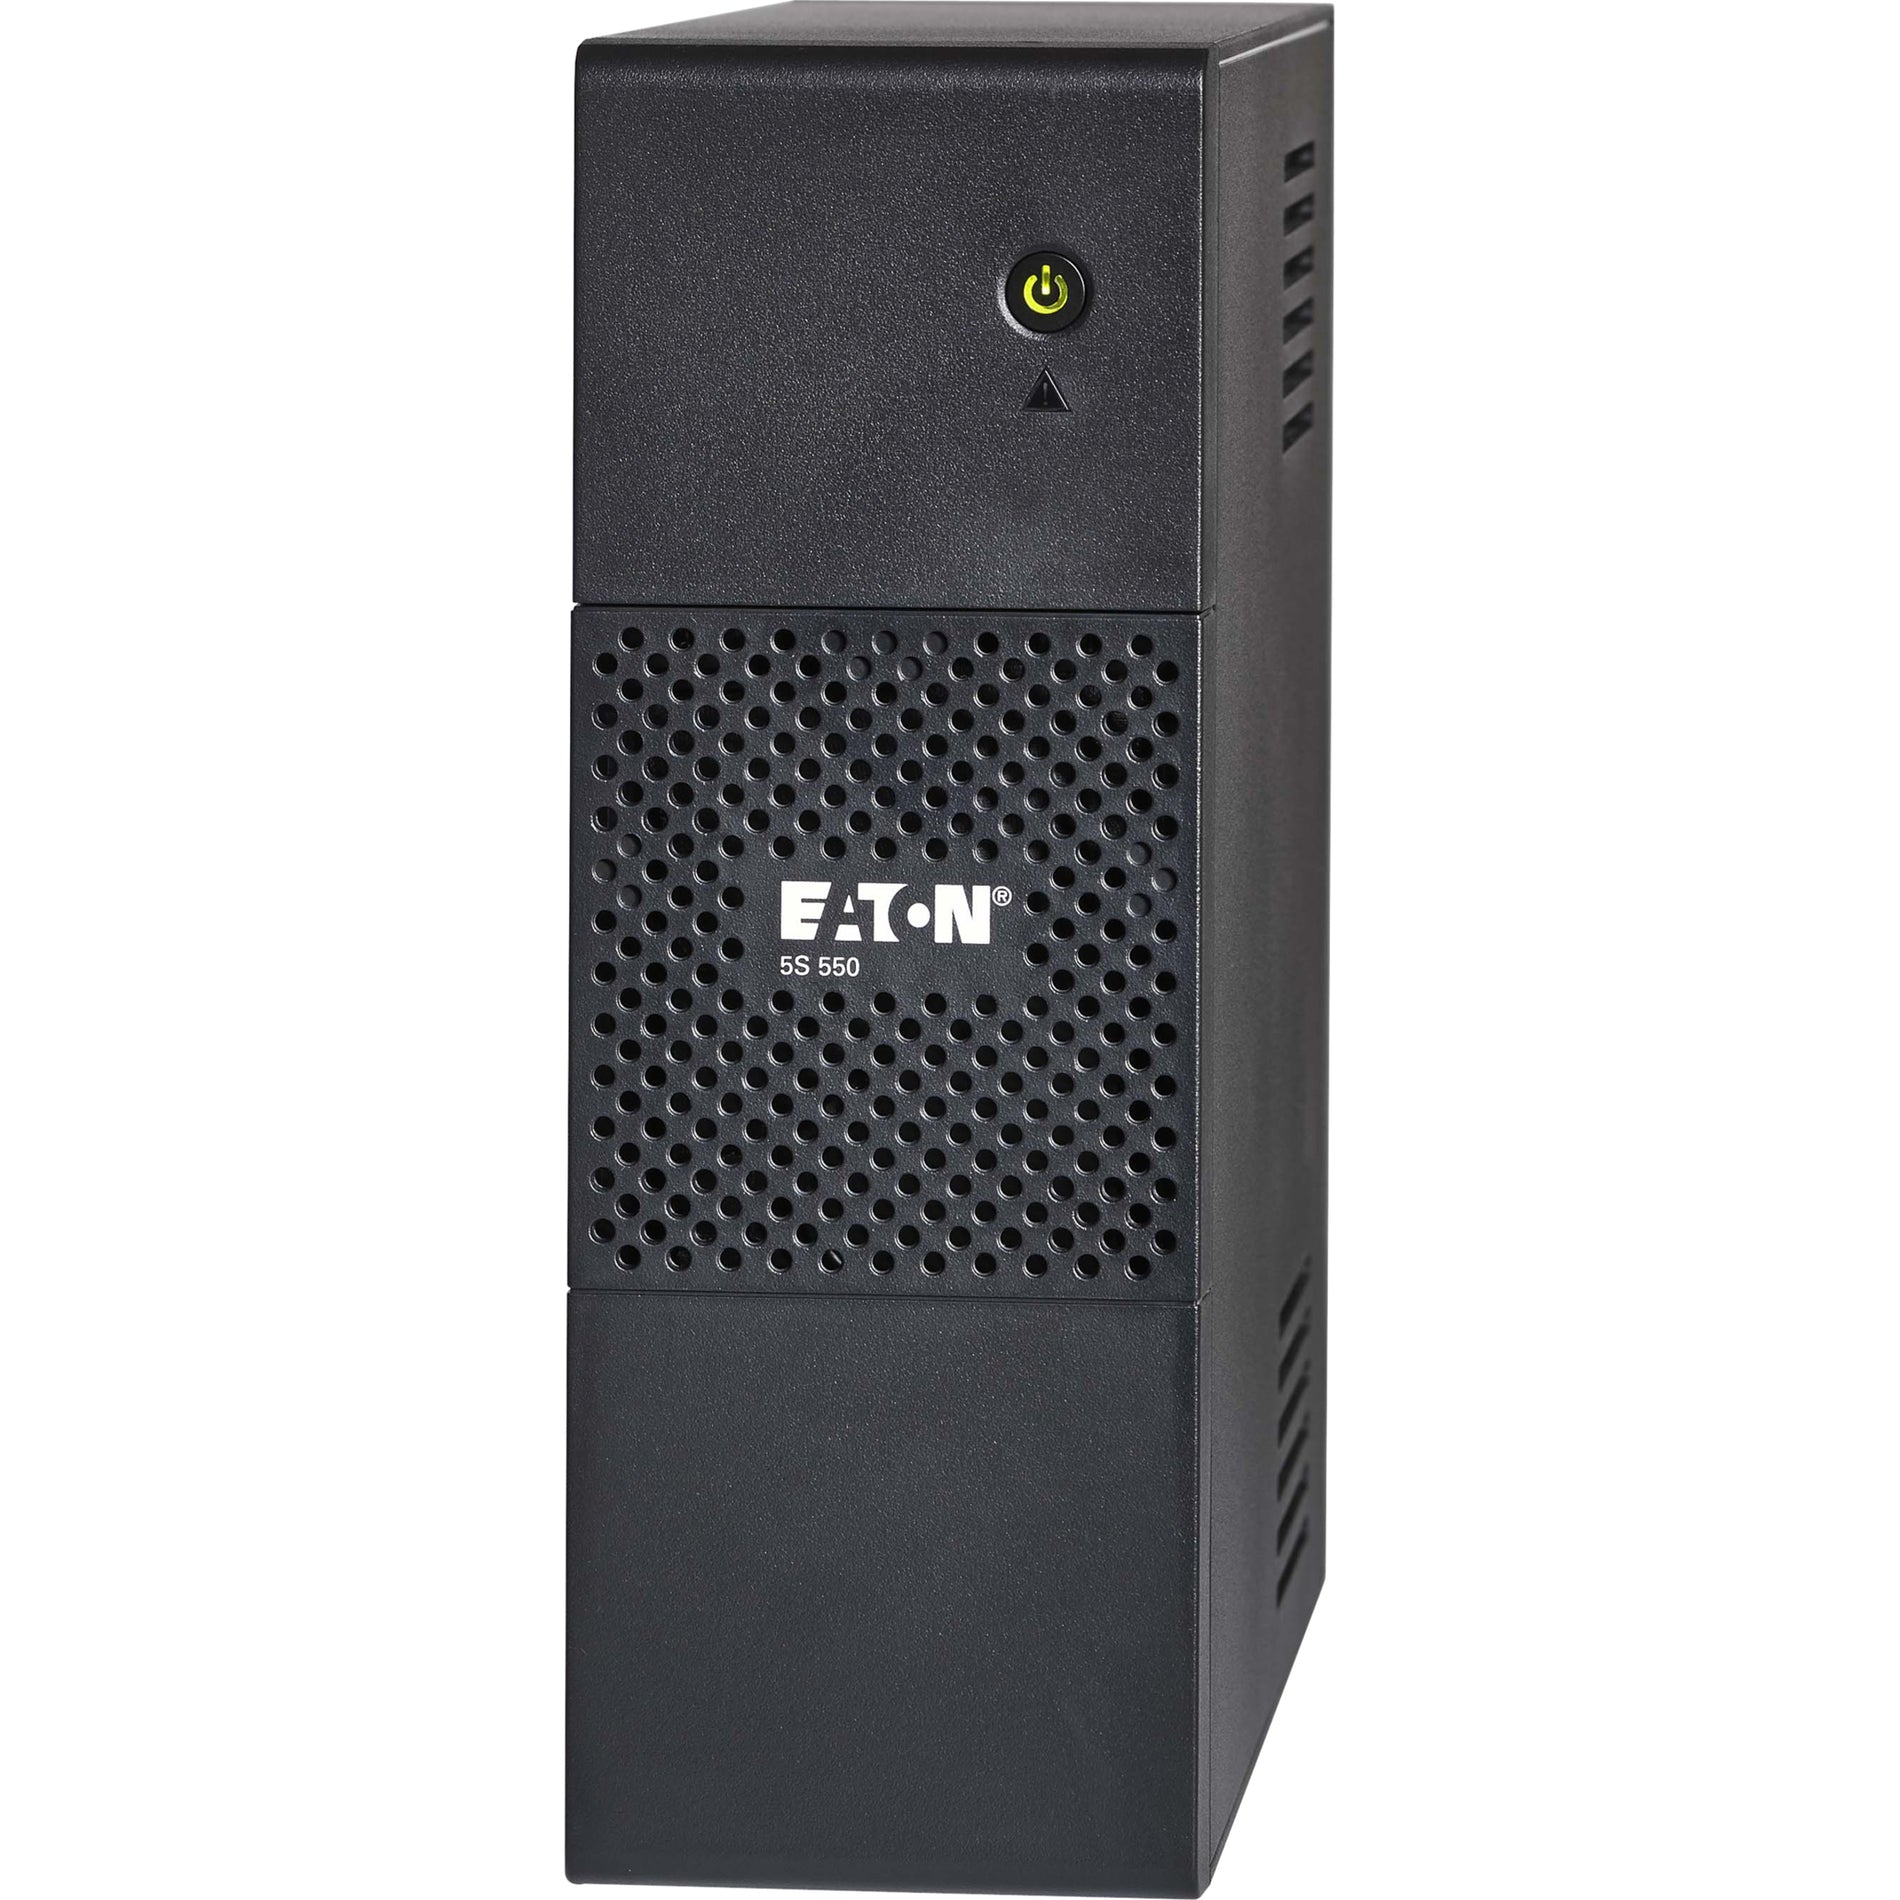 Eaton 5S550 5S UPS, 550VA Tower 120V, 3 Year Warranty, USB & Network Ports